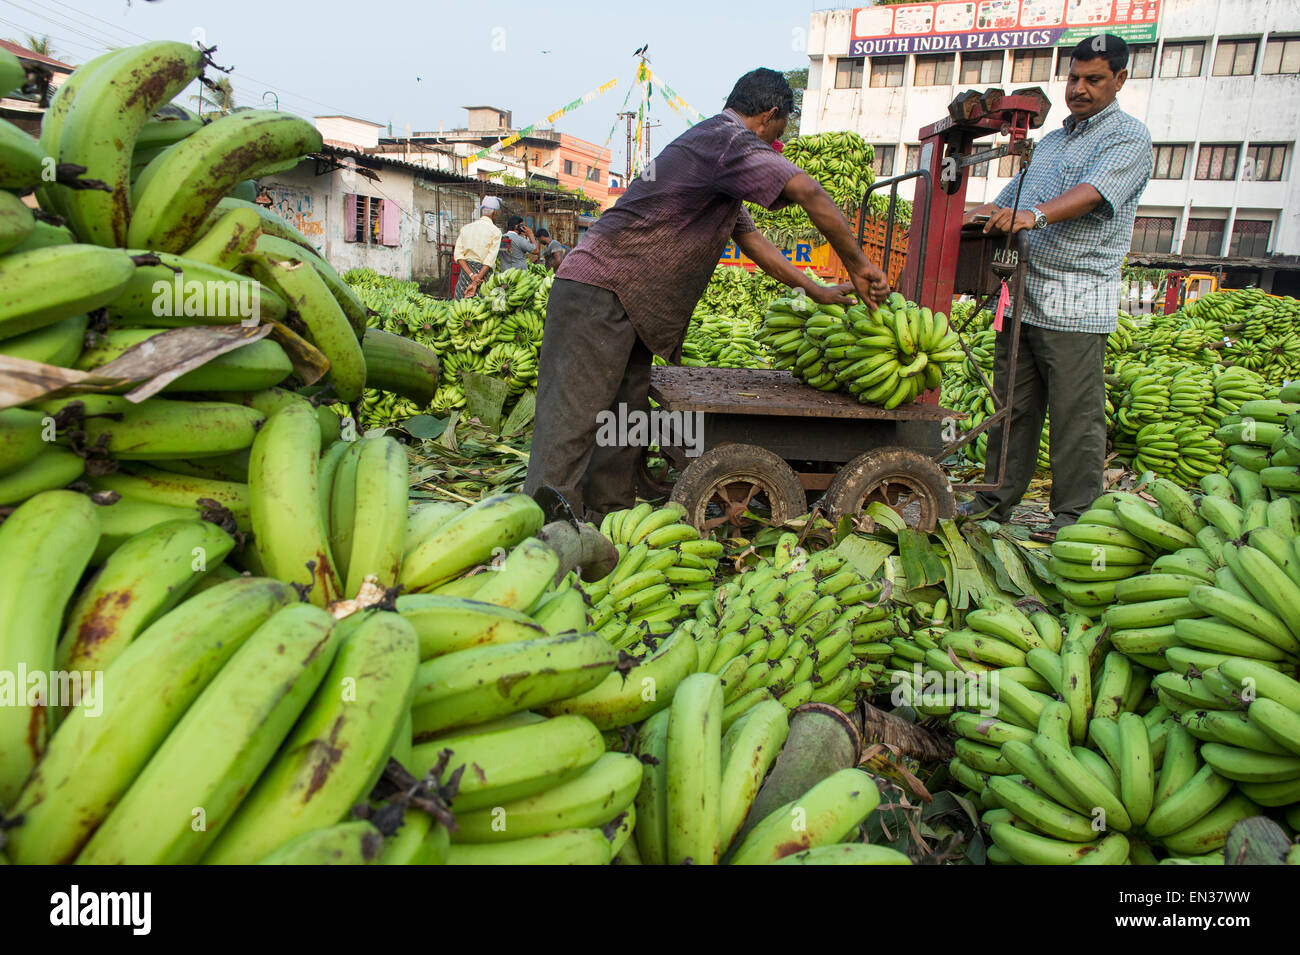 Les vendeurs de bananes et les travailleurs de la banane sur Broadway Market, Ernakulam, Kerala, Inde Banque D'Images